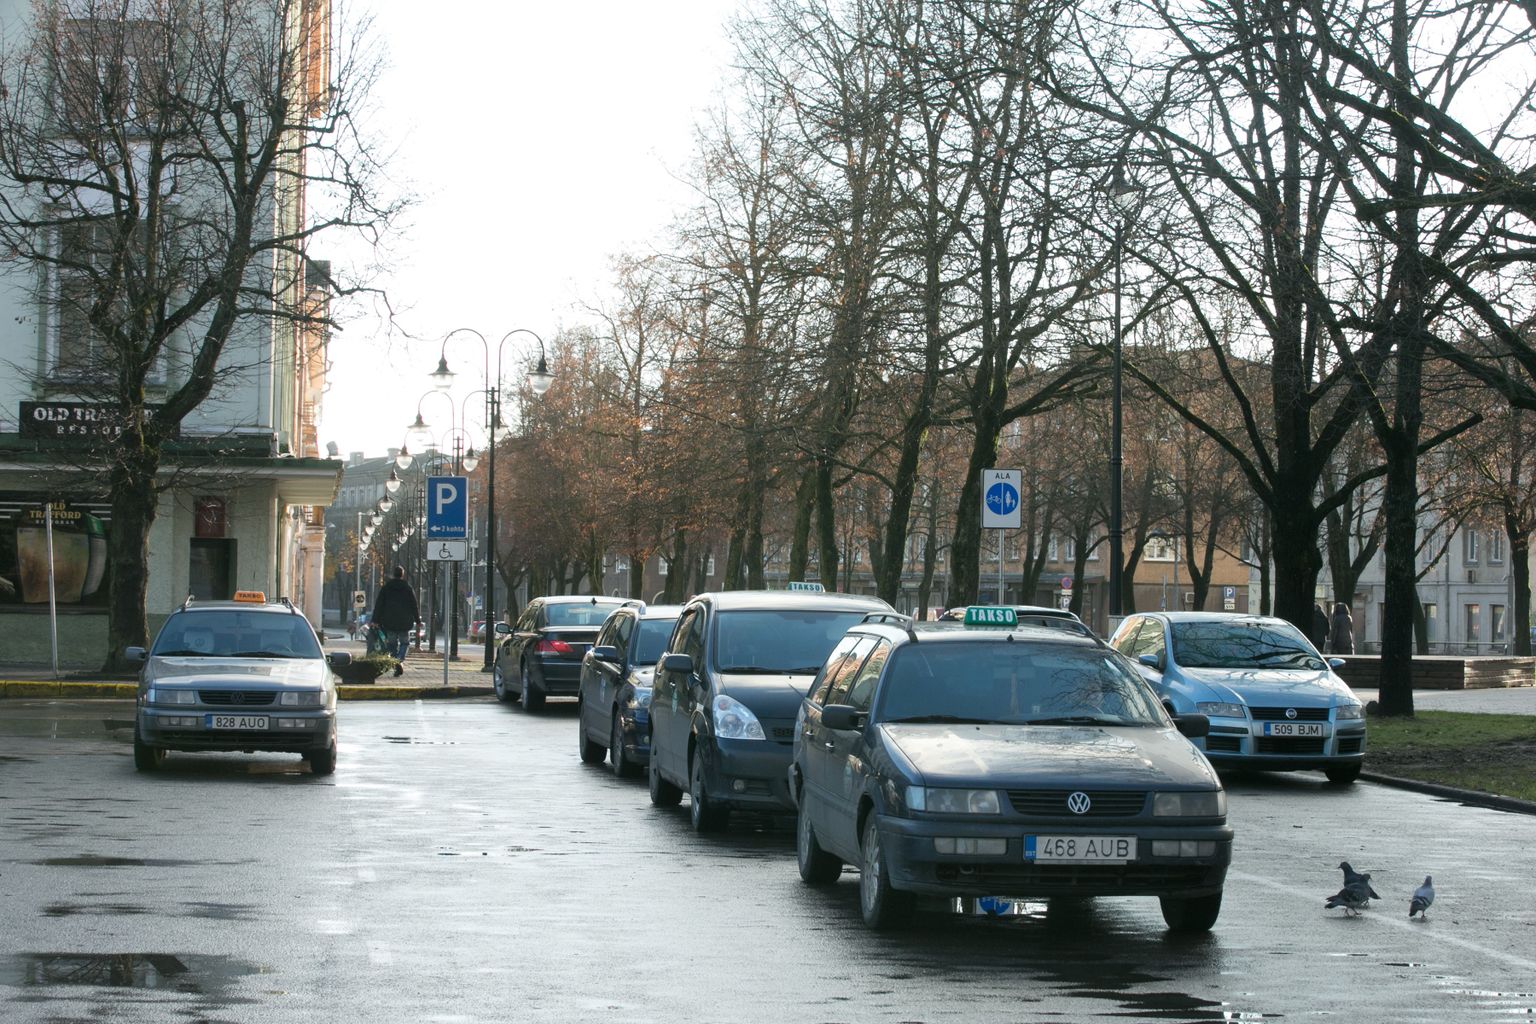 Narva taksojuhtidel kaob vähimgi huvi eesti keele õppimise vastu, kui riigikogu paranduse vastu võtab.